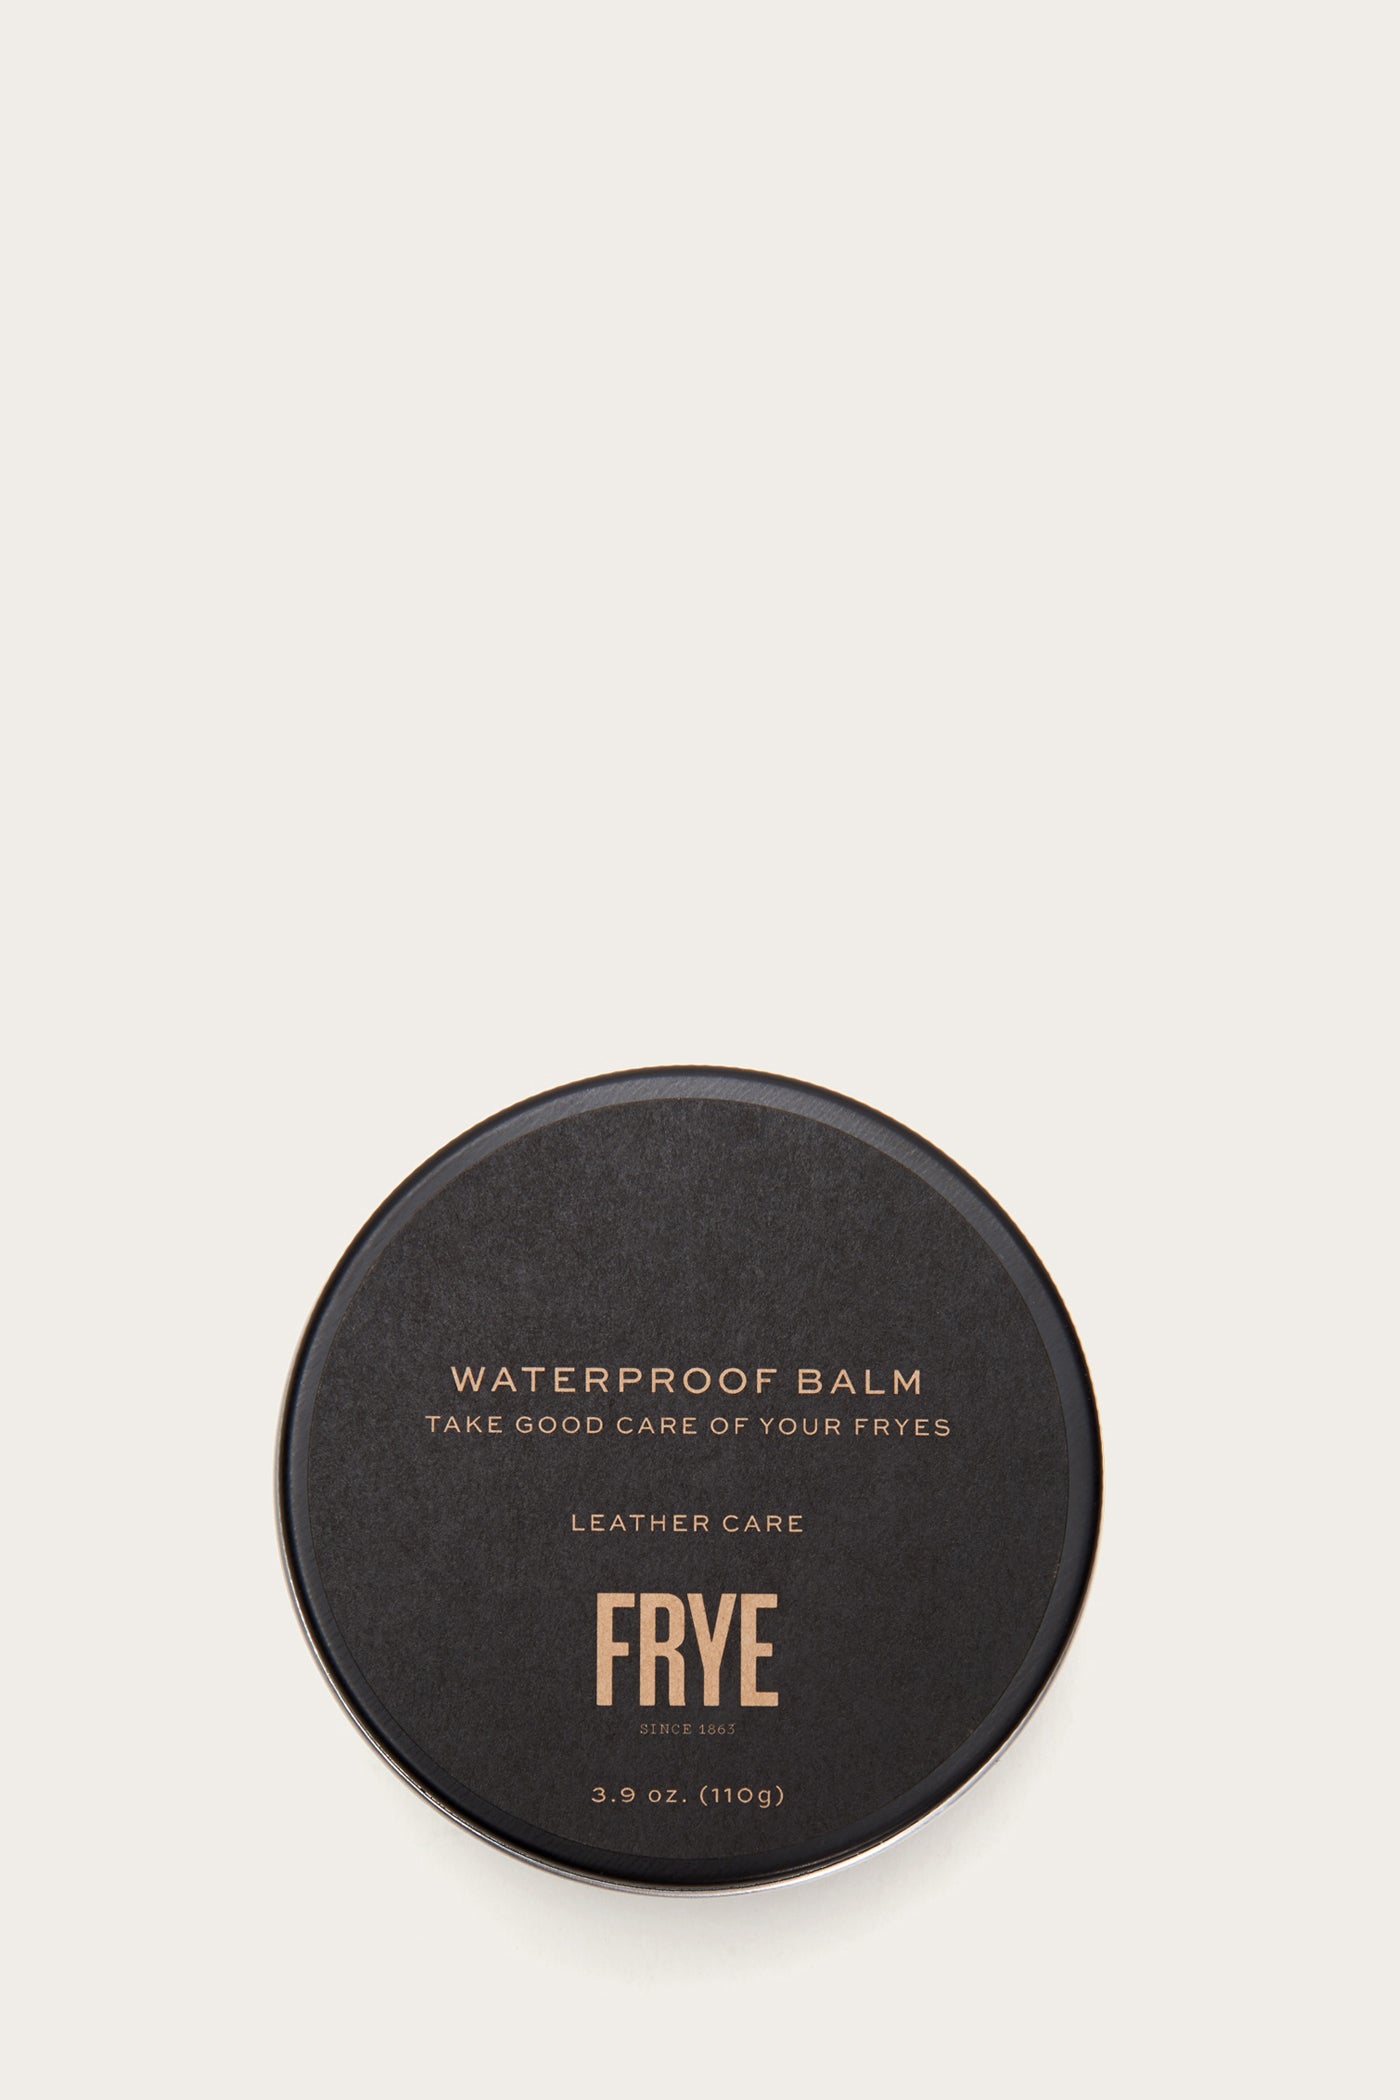 Waterproof Balm | FRYE Since 1863